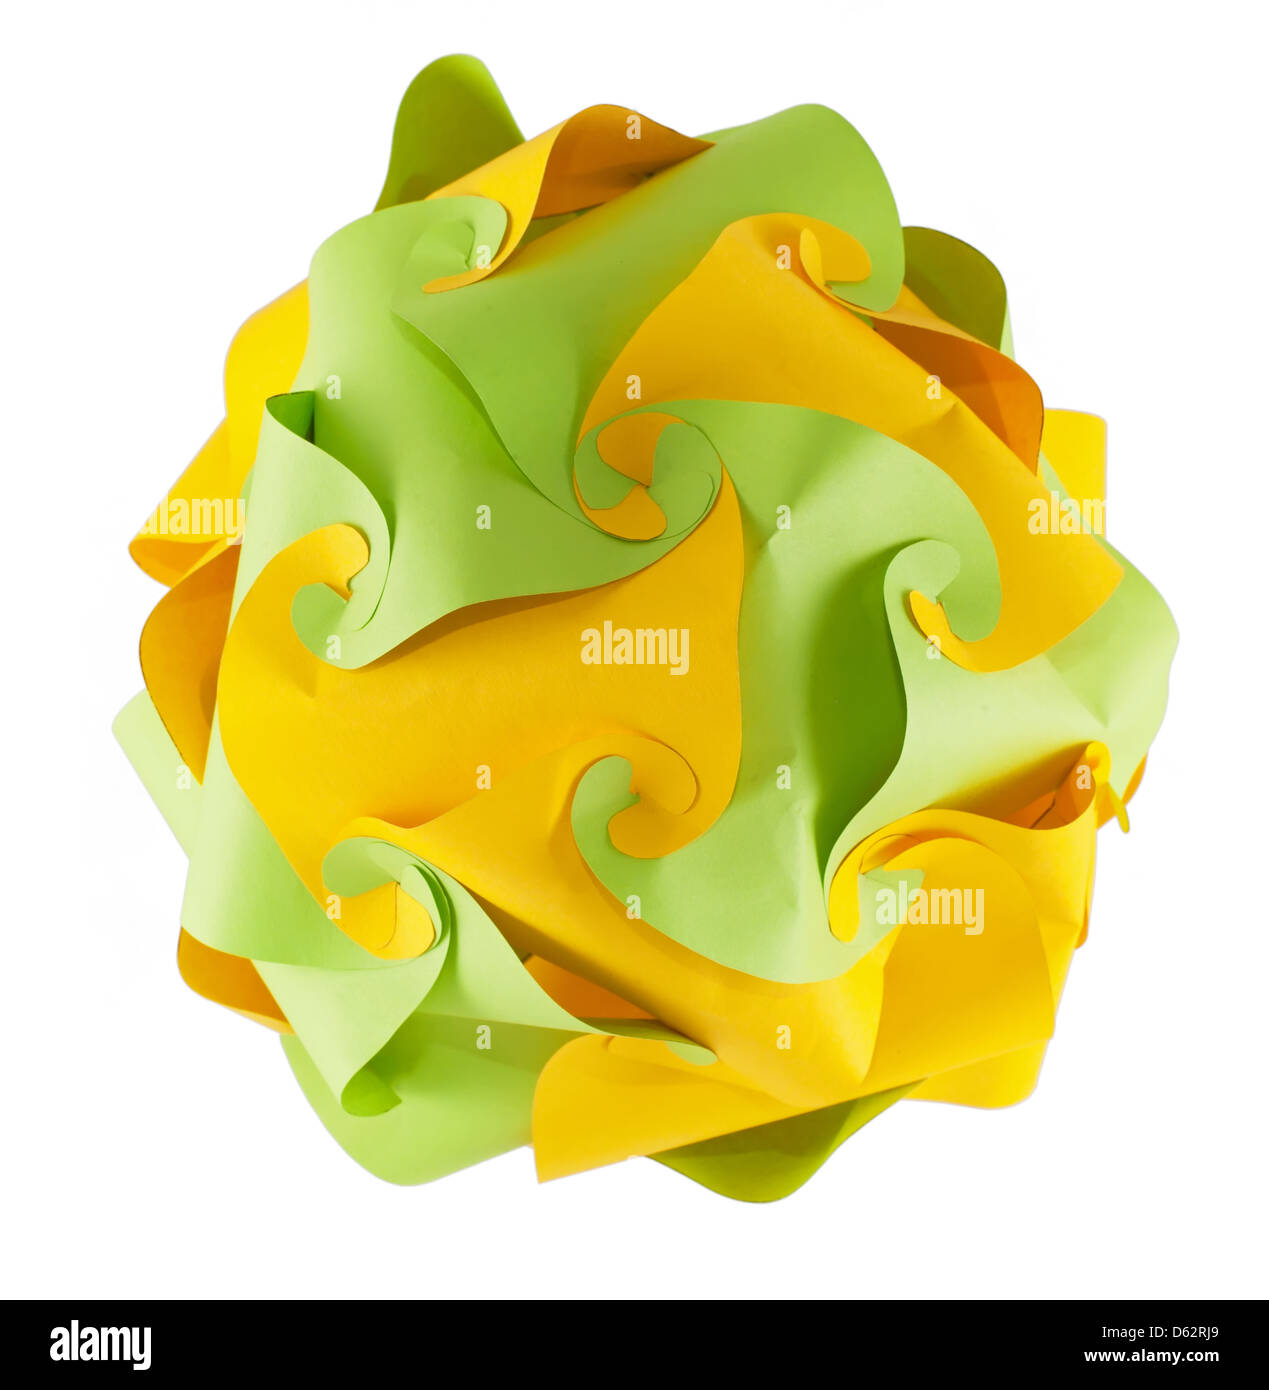 Origami kusudama vert et jaune Banque D'Images